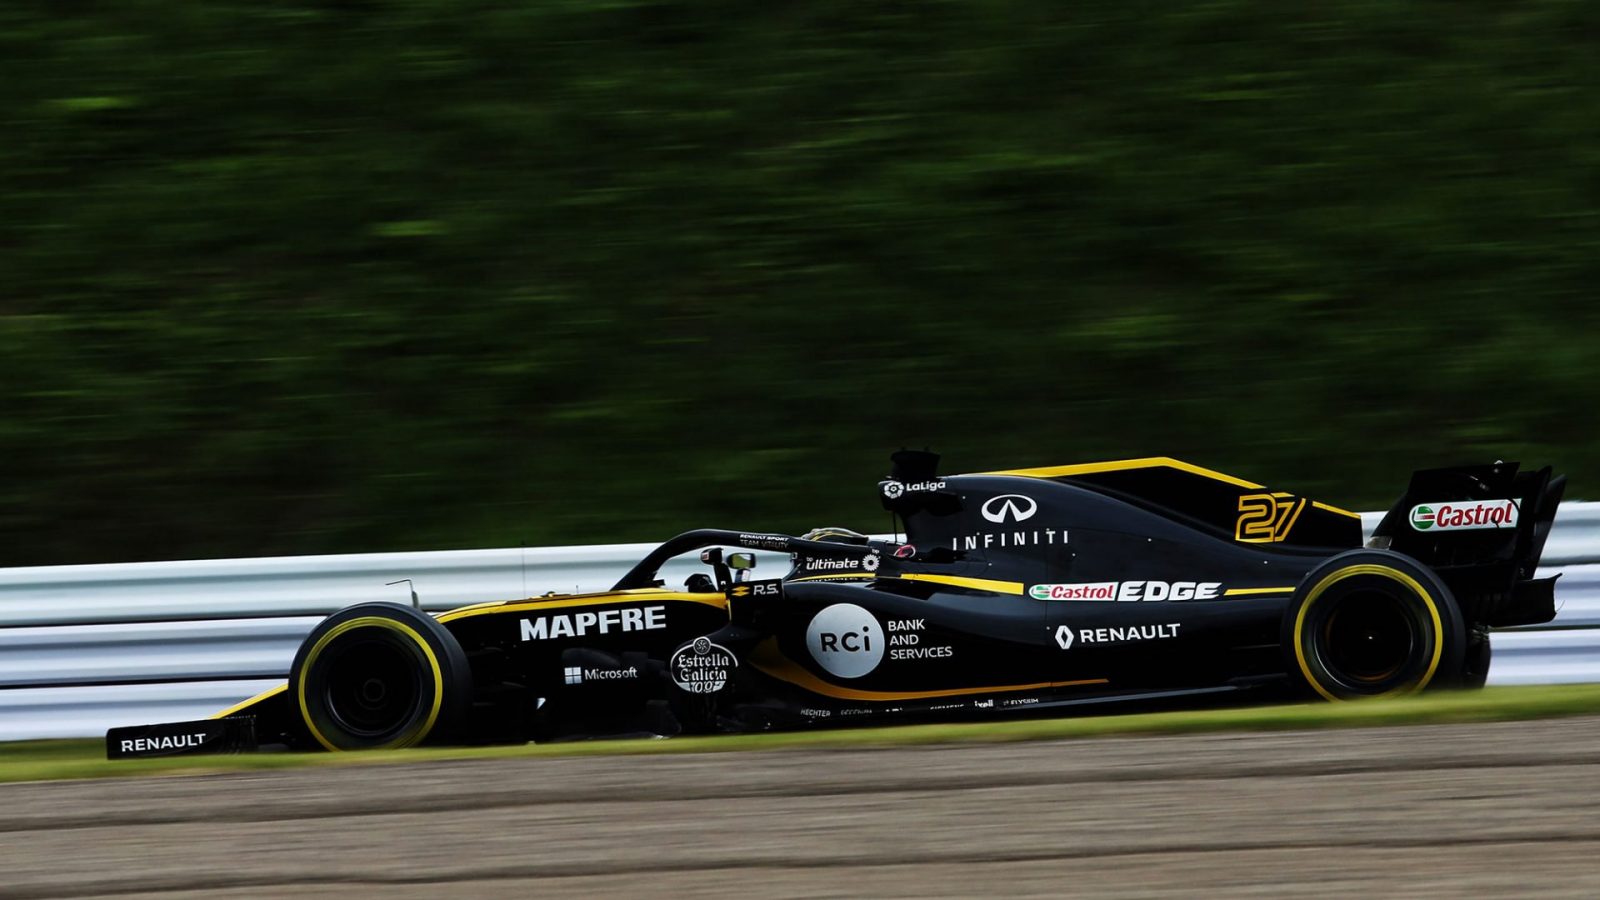 Автомобиль команды «Рено» Формулы 1. Все фотографии предоставлены Renault Sport Formula One Team.